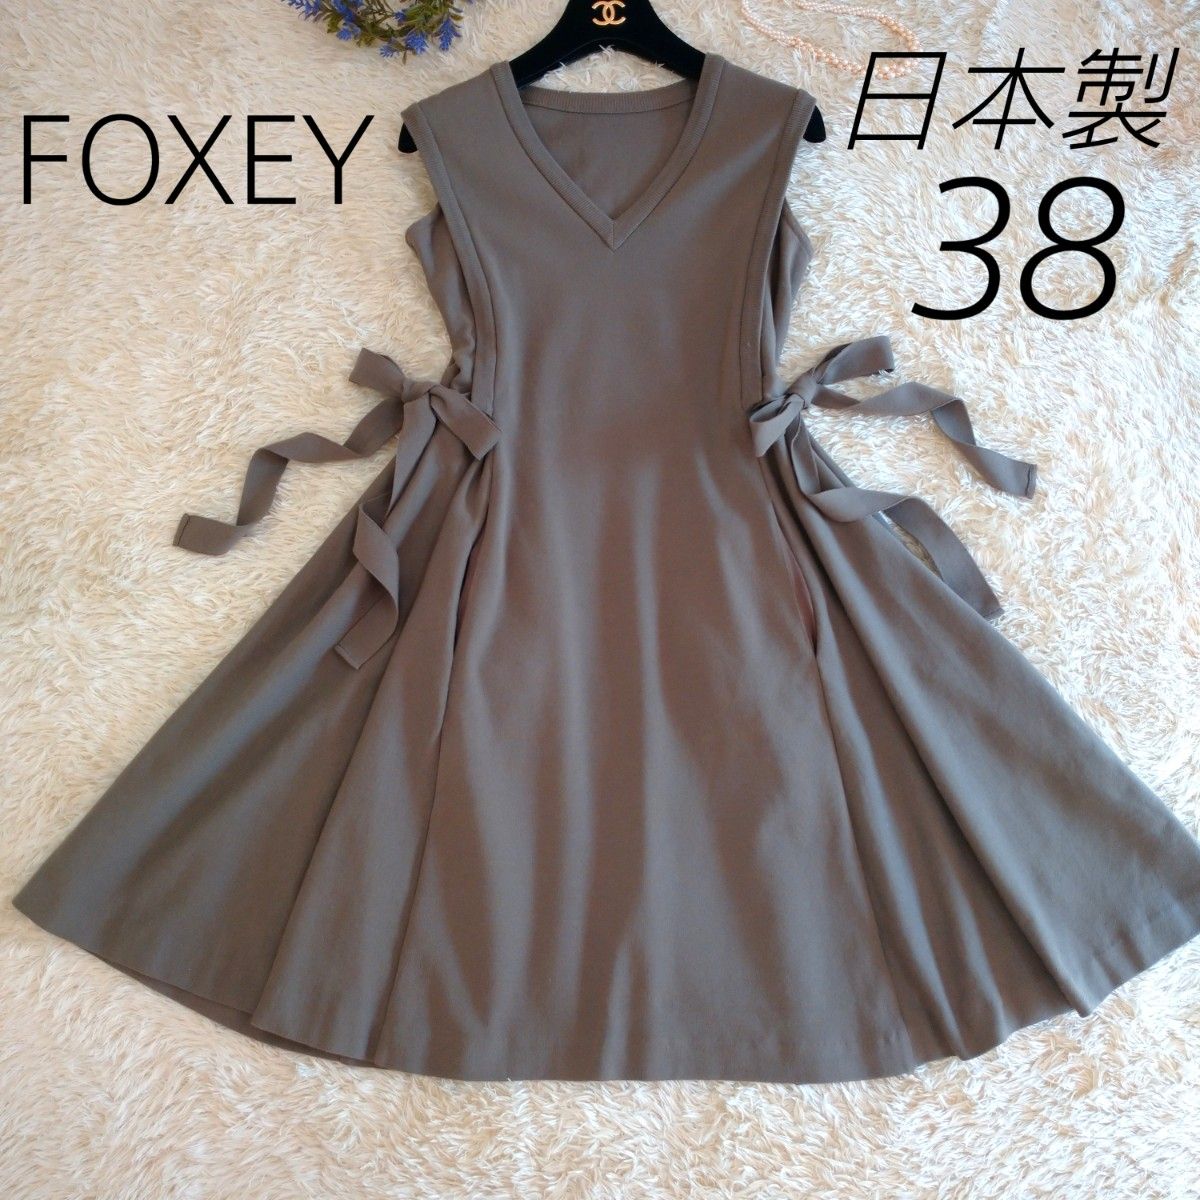 日本製 FOXEY フォクシー 二ットワンピース Vネック サイドリボン 38